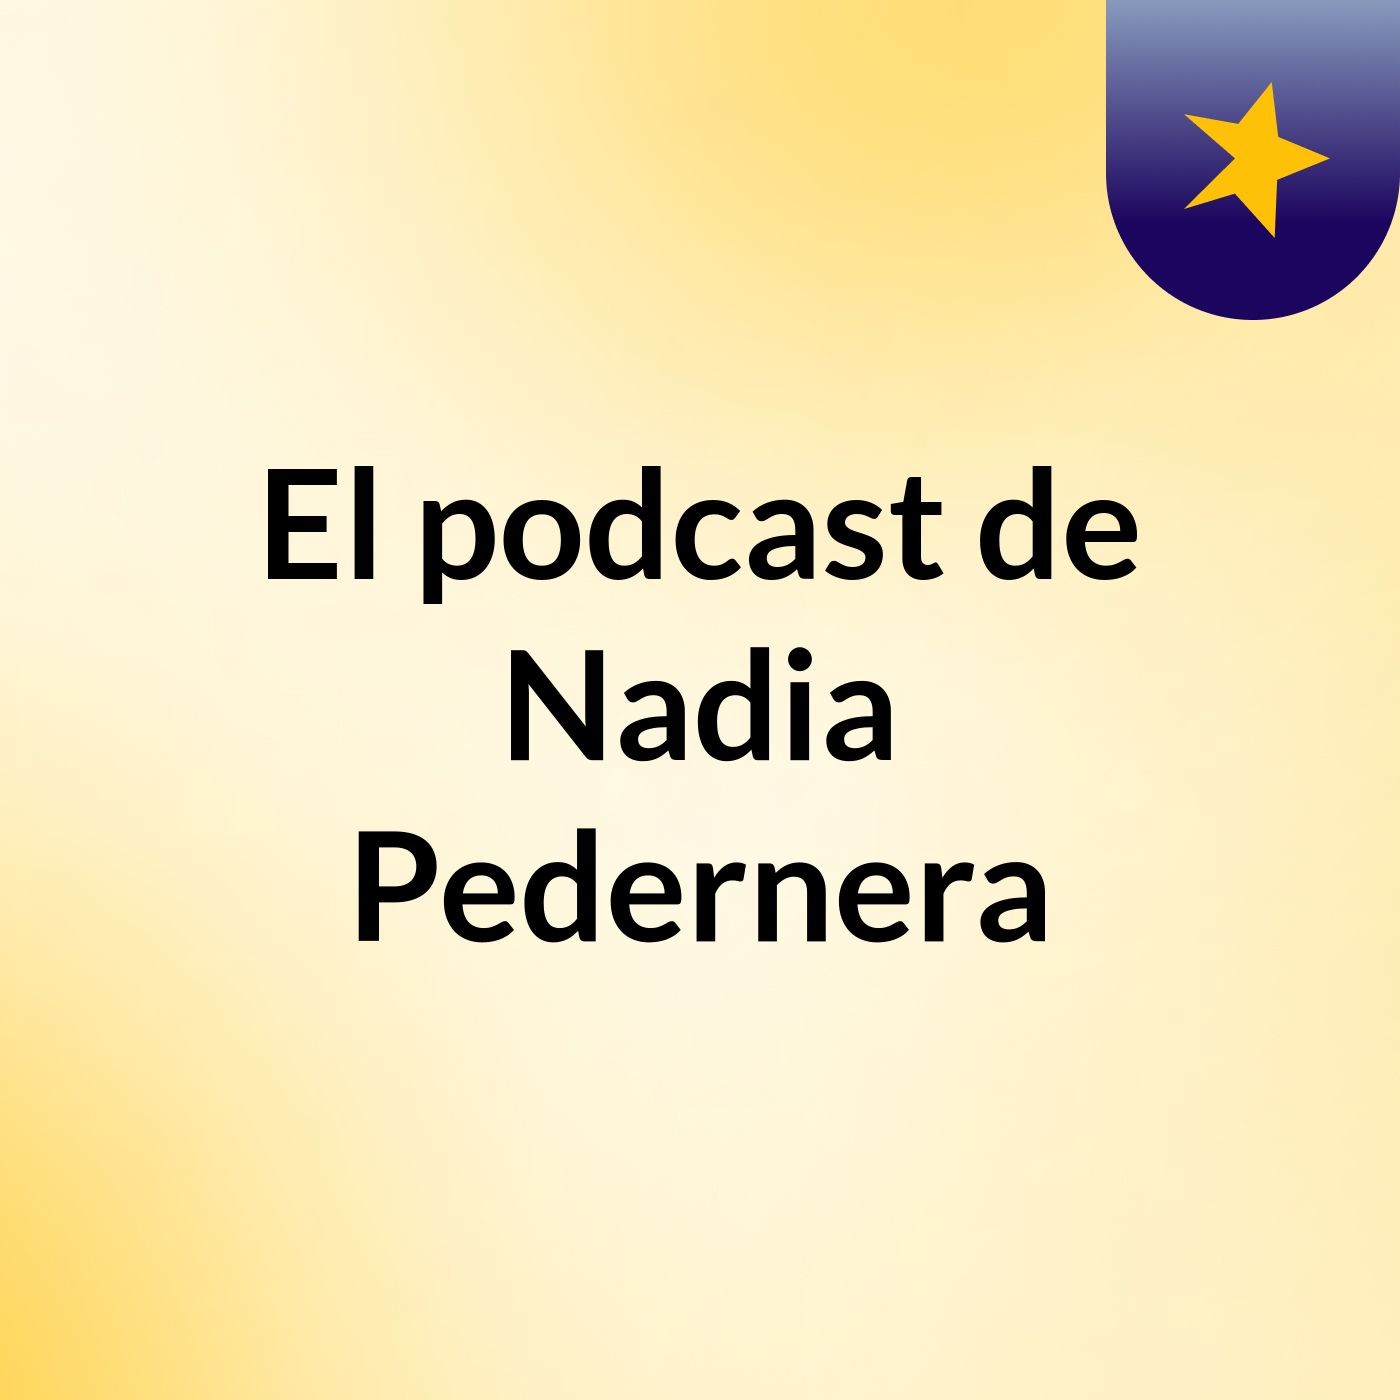 Episodio 14 - El podcast de Nadia Pedernera